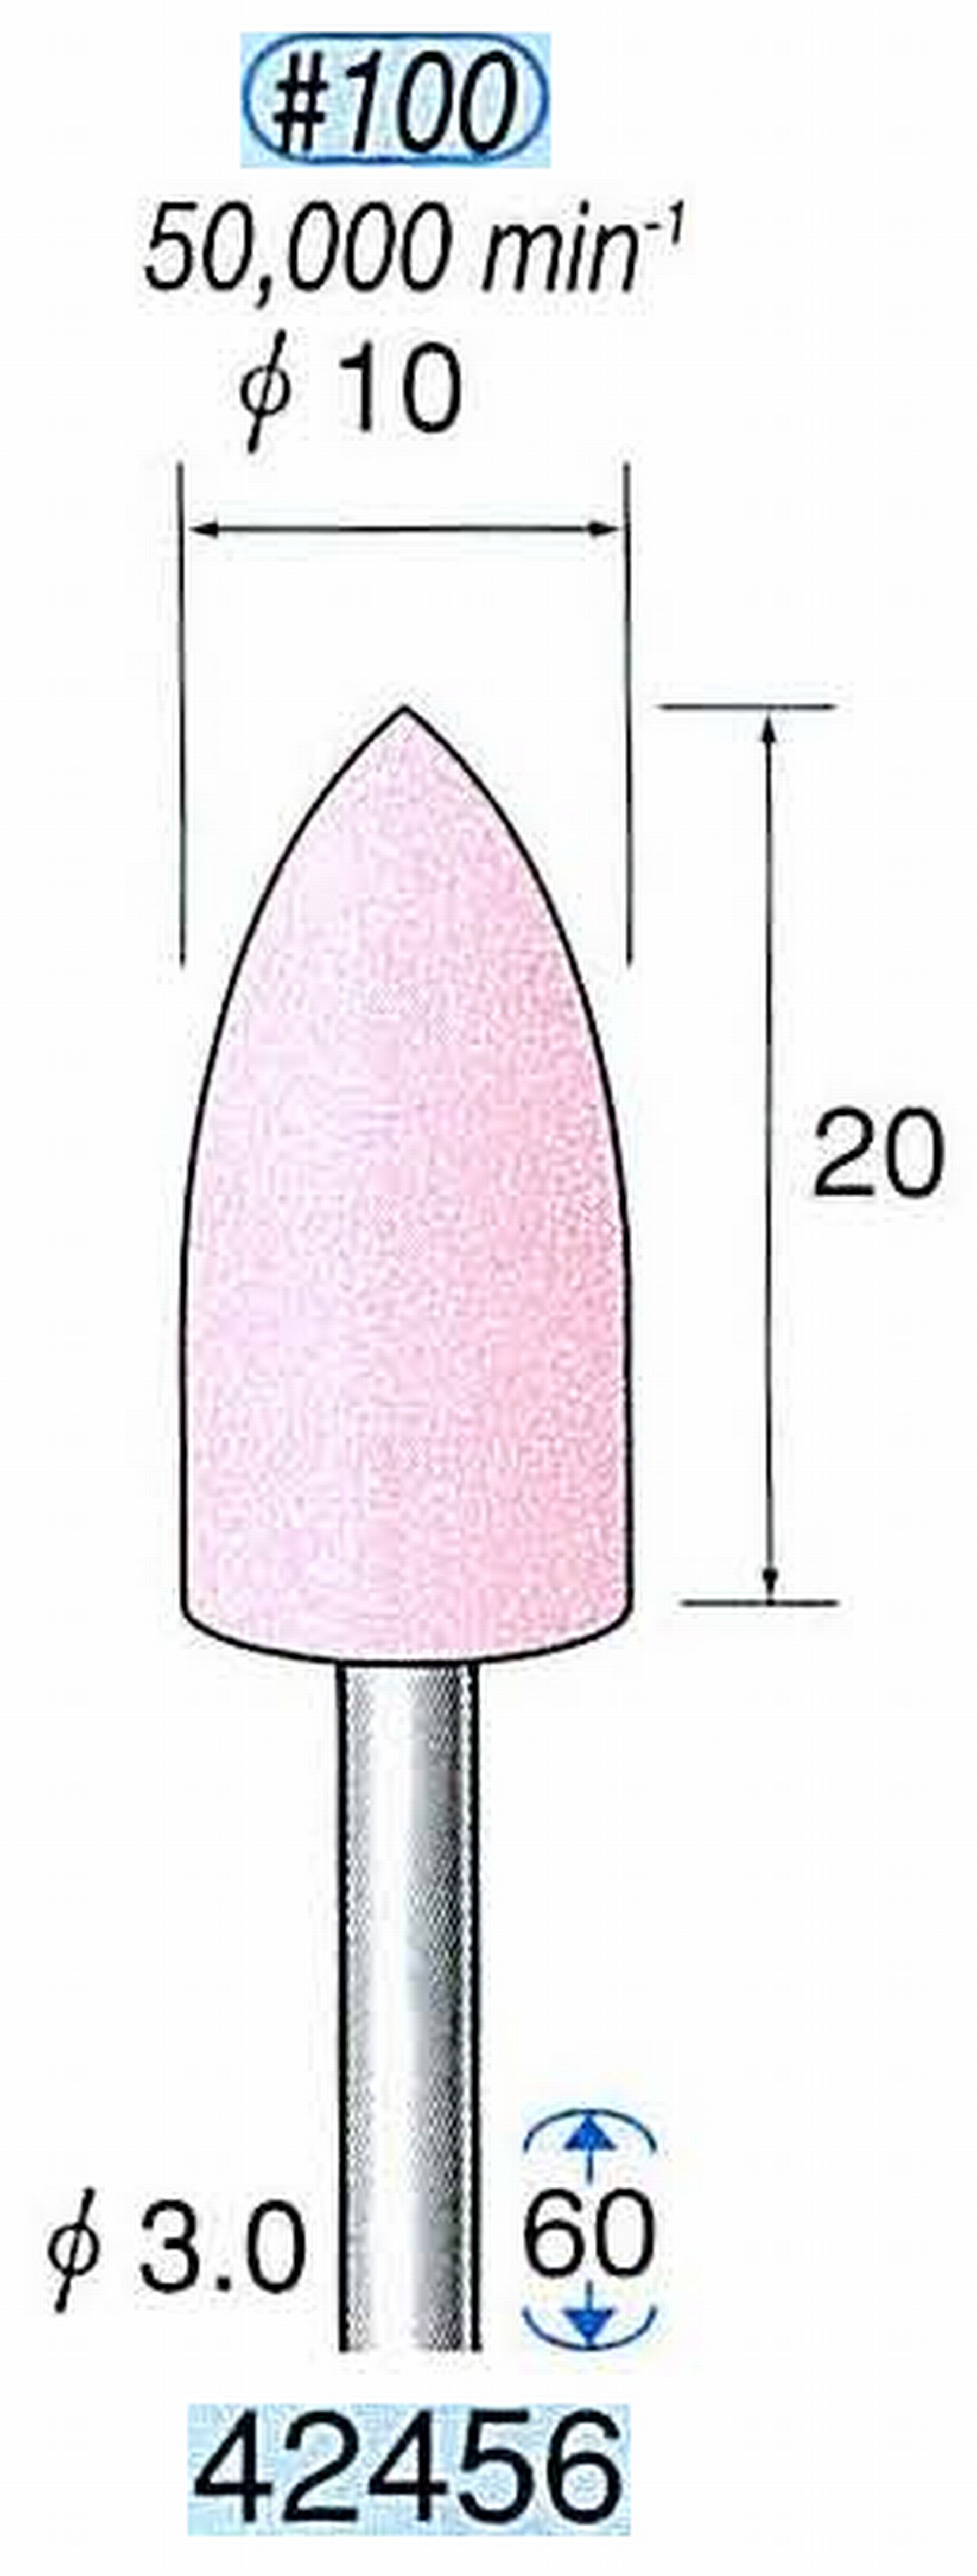 ナカニシ/NAKANISHI 軸付砥石(WA砥粒) 一般研削用 軸径(シャンク) φ3.0mm 42456